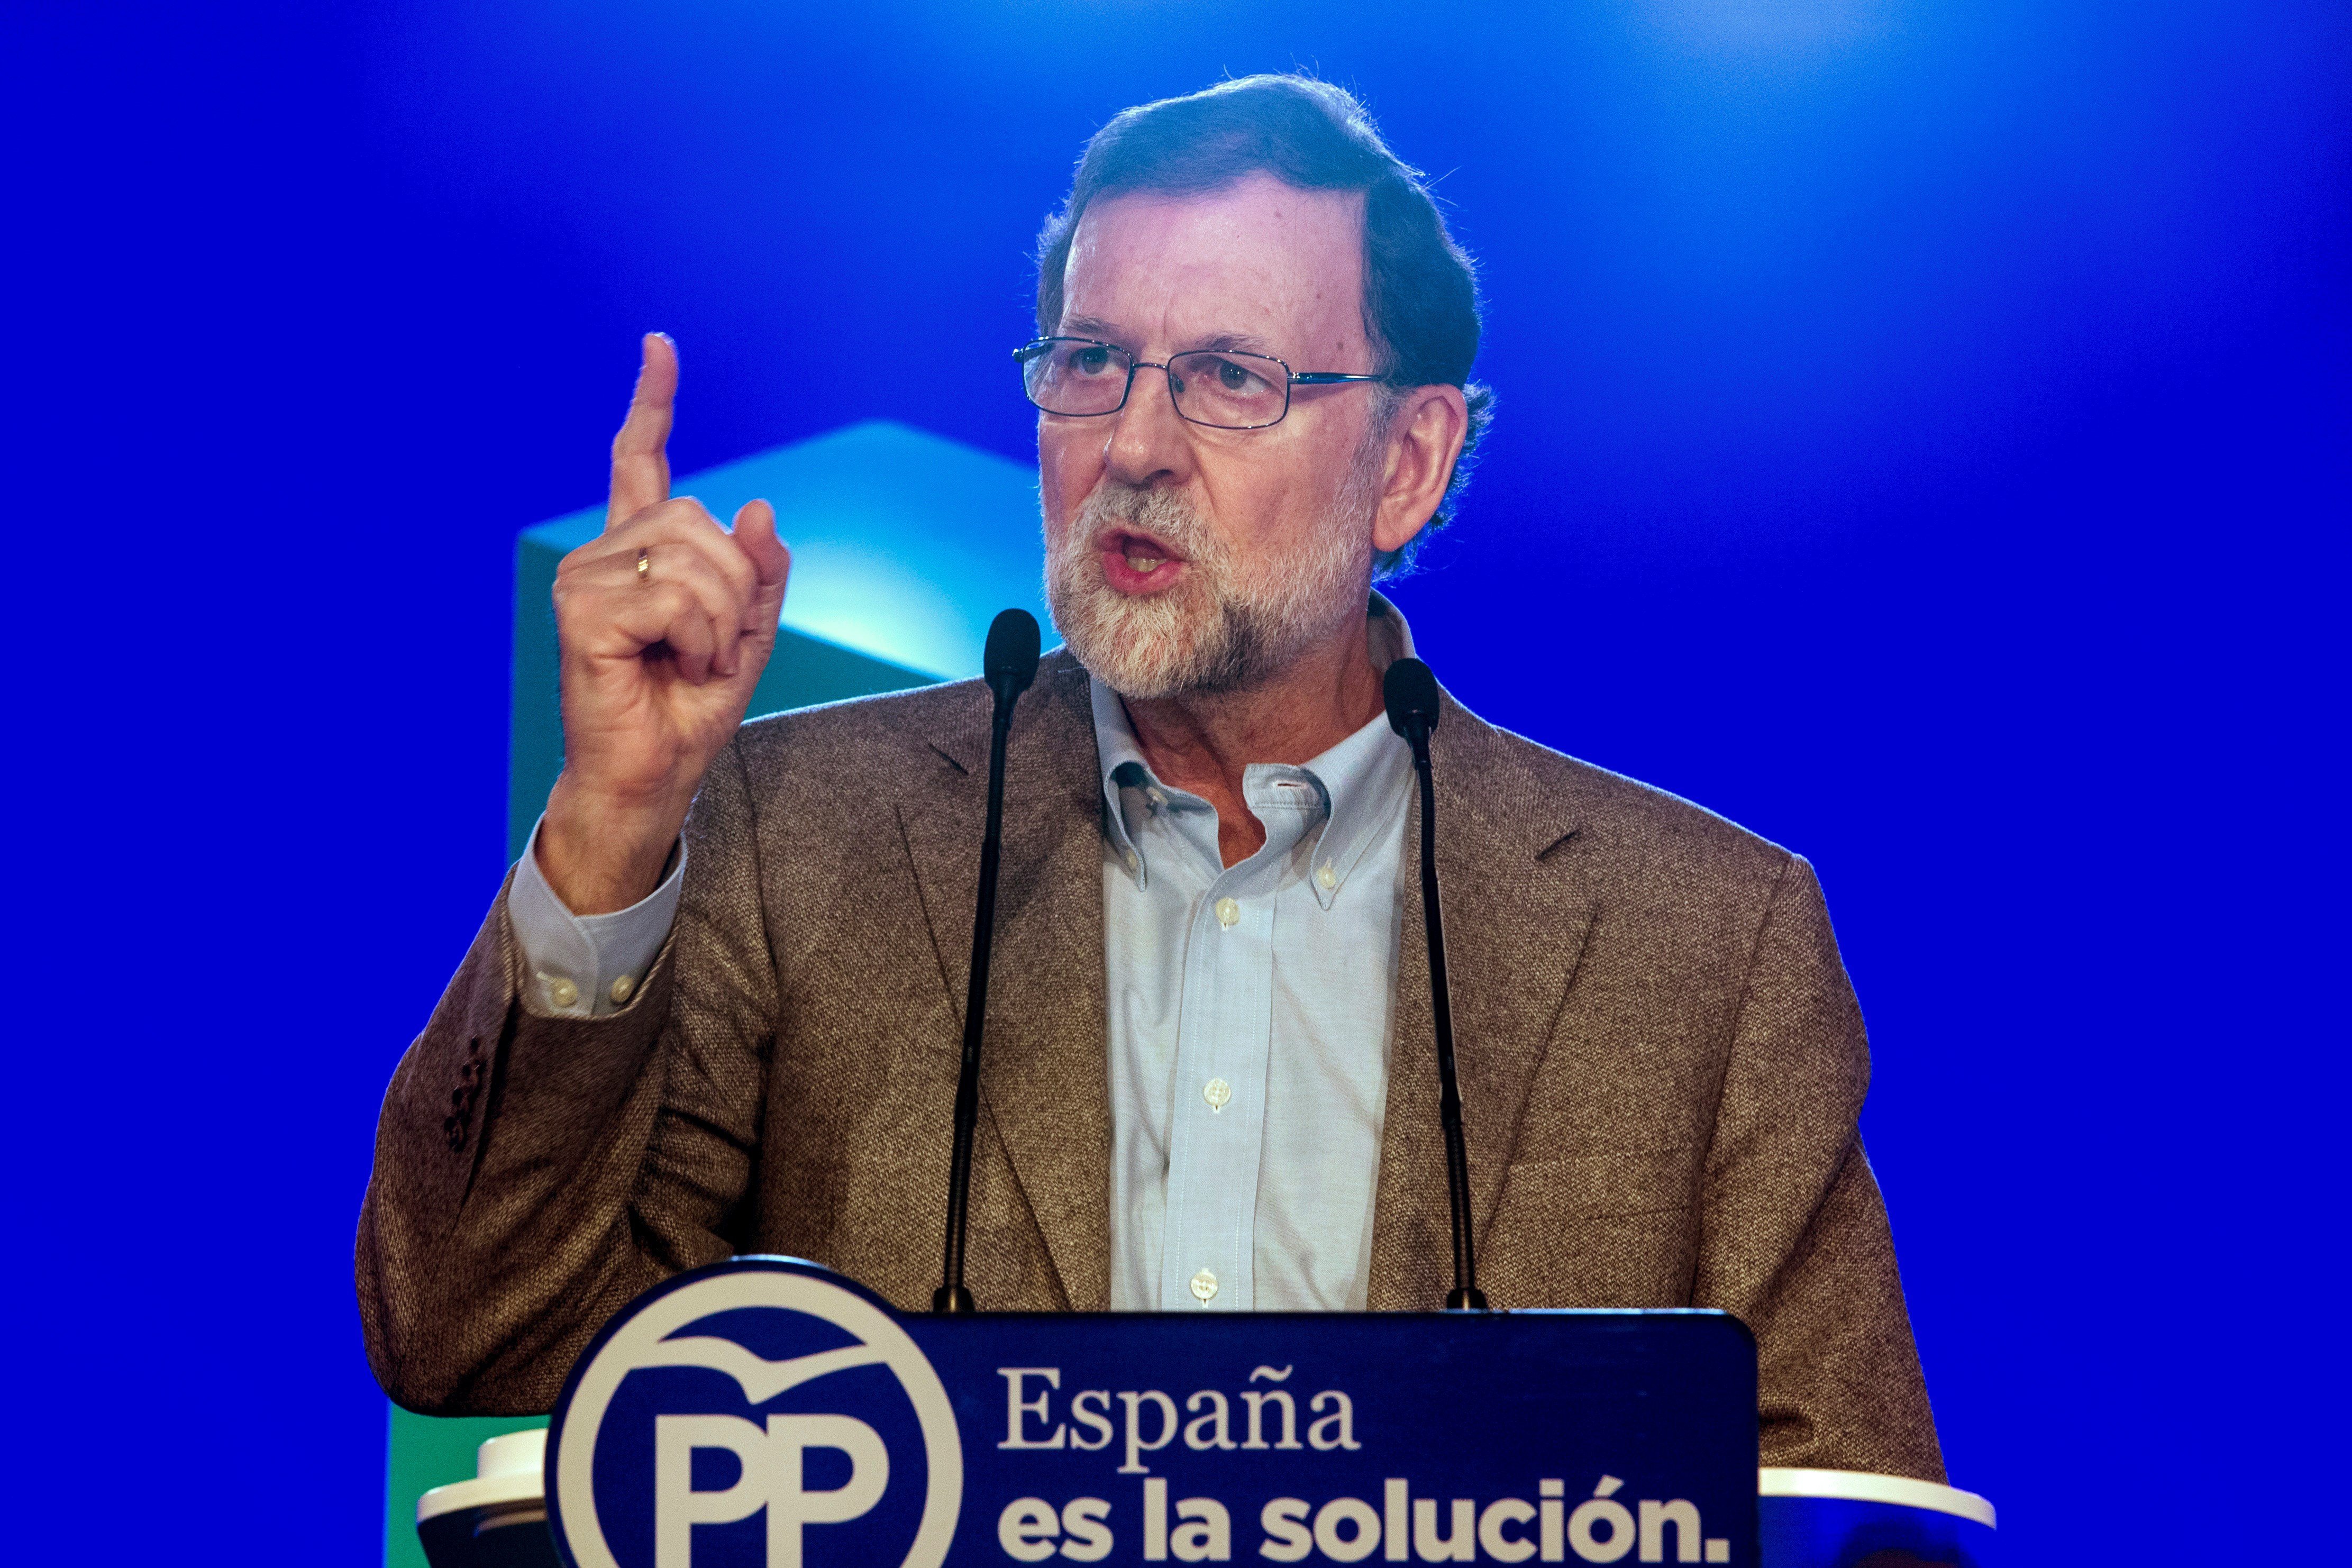 ¿Crees que Rajoy mantendrá el 155 después de las elecciones?